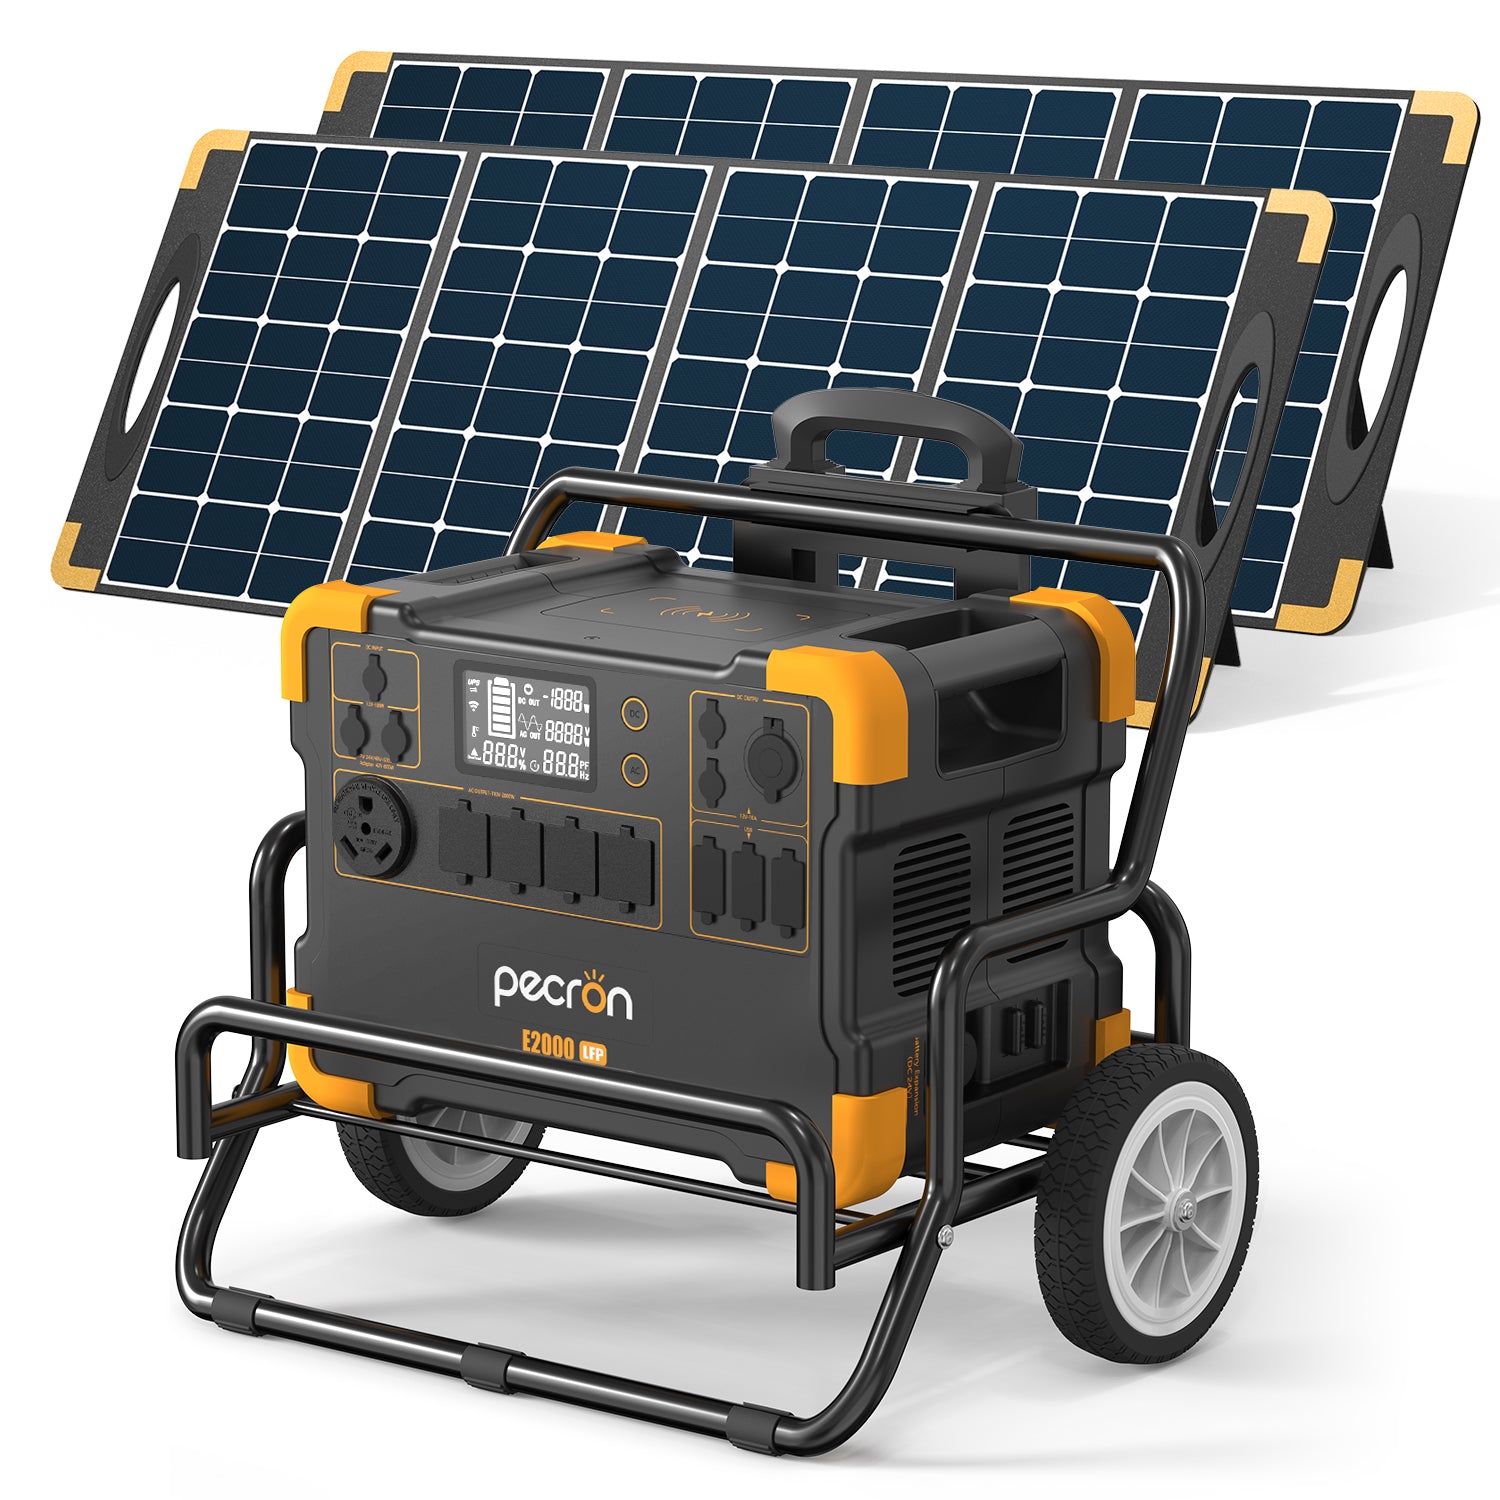 Pecron E2000LFP erweiterbares Solarsystem-Kit